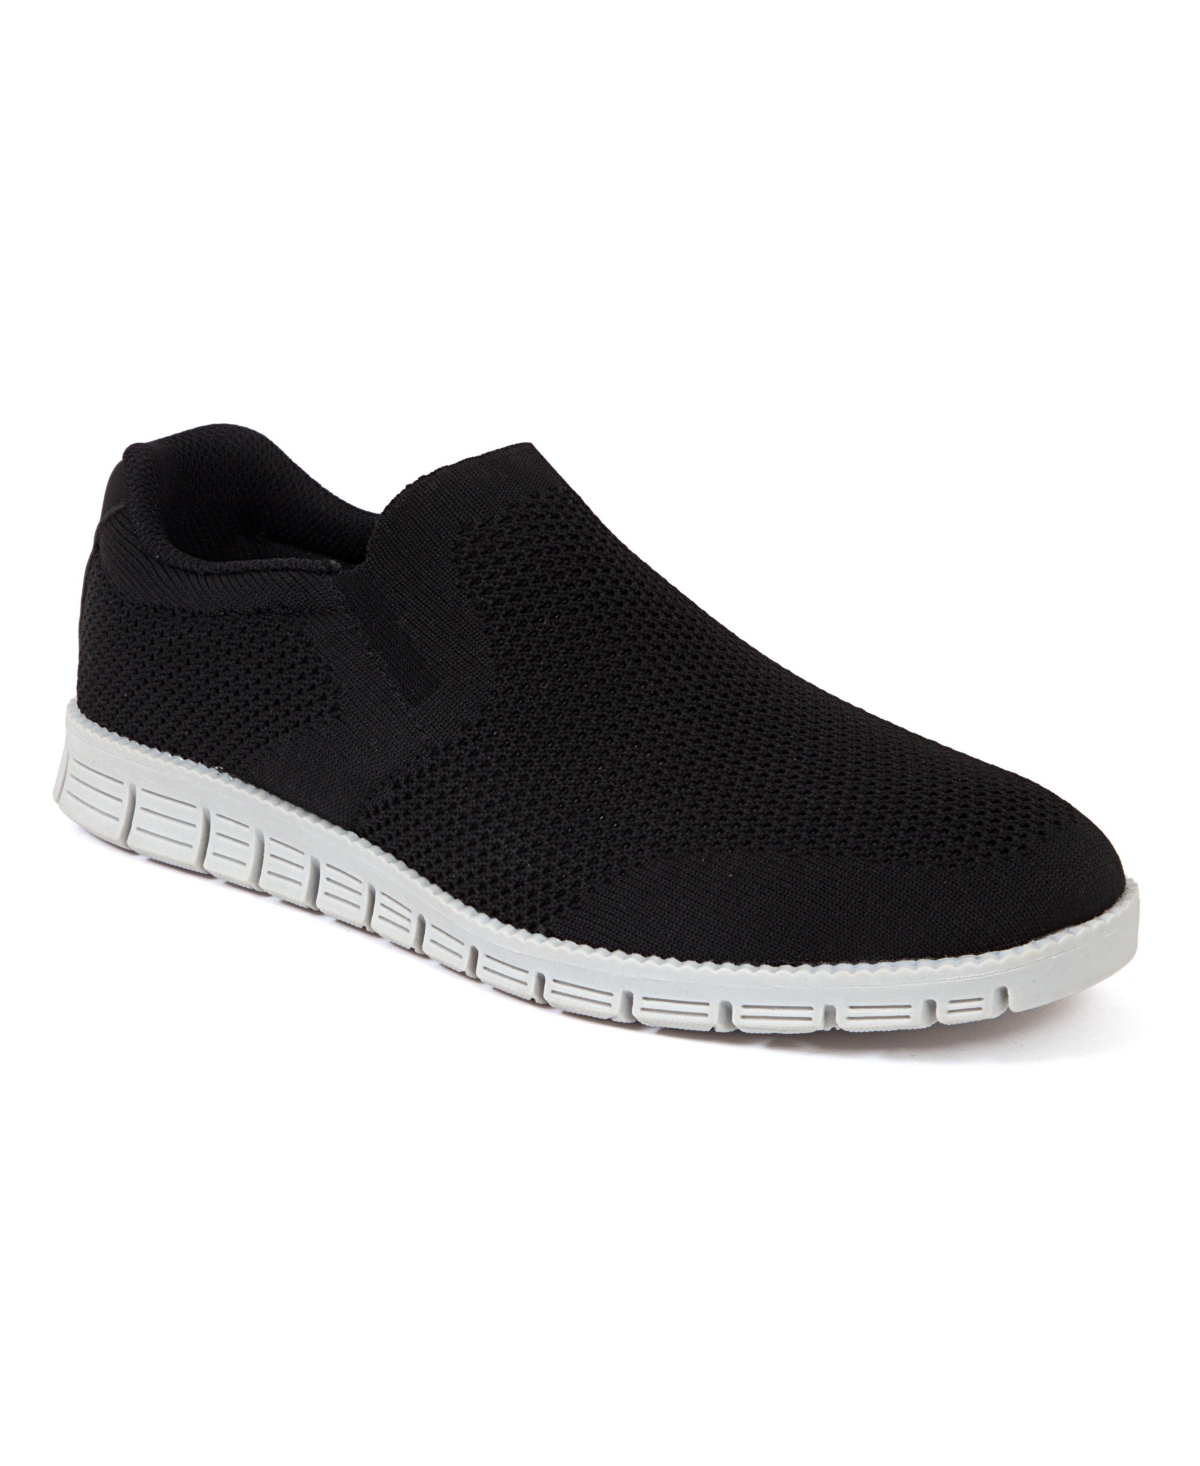 Men's Emmett Slip-On Fashion Sneakers - Black, Gray